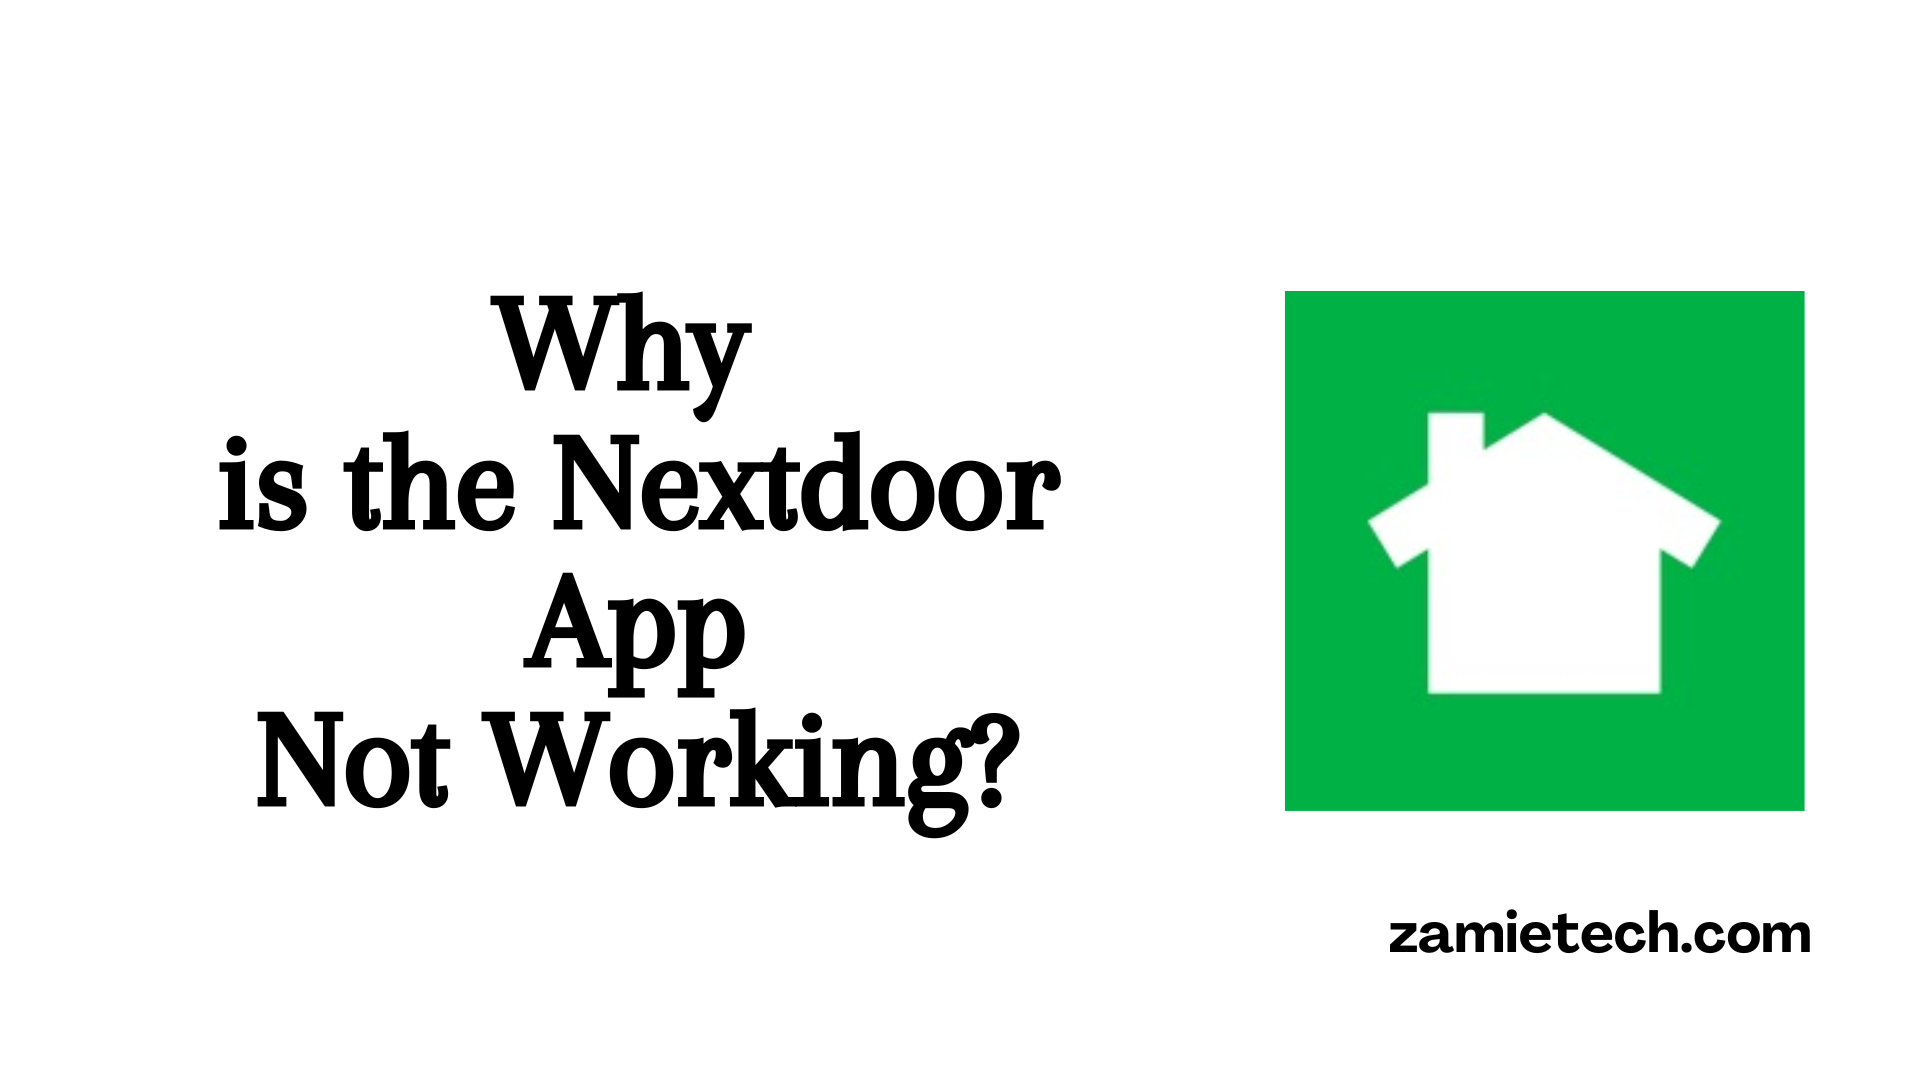 Fix: Nextdoor App Not Working